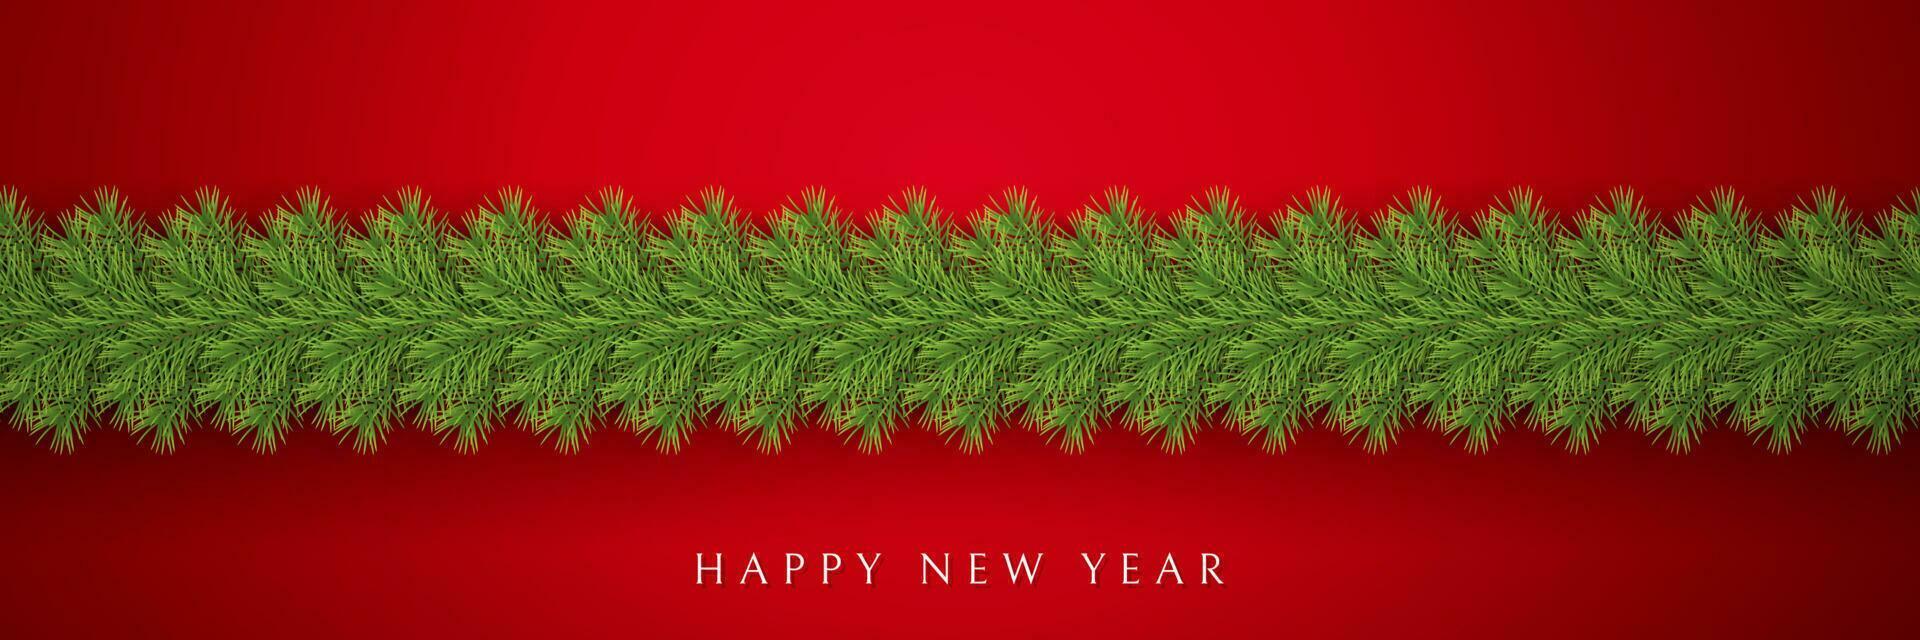 festlig jul eller ny år krans. jul träd grenar. högtider bakgrund. vektor illustration